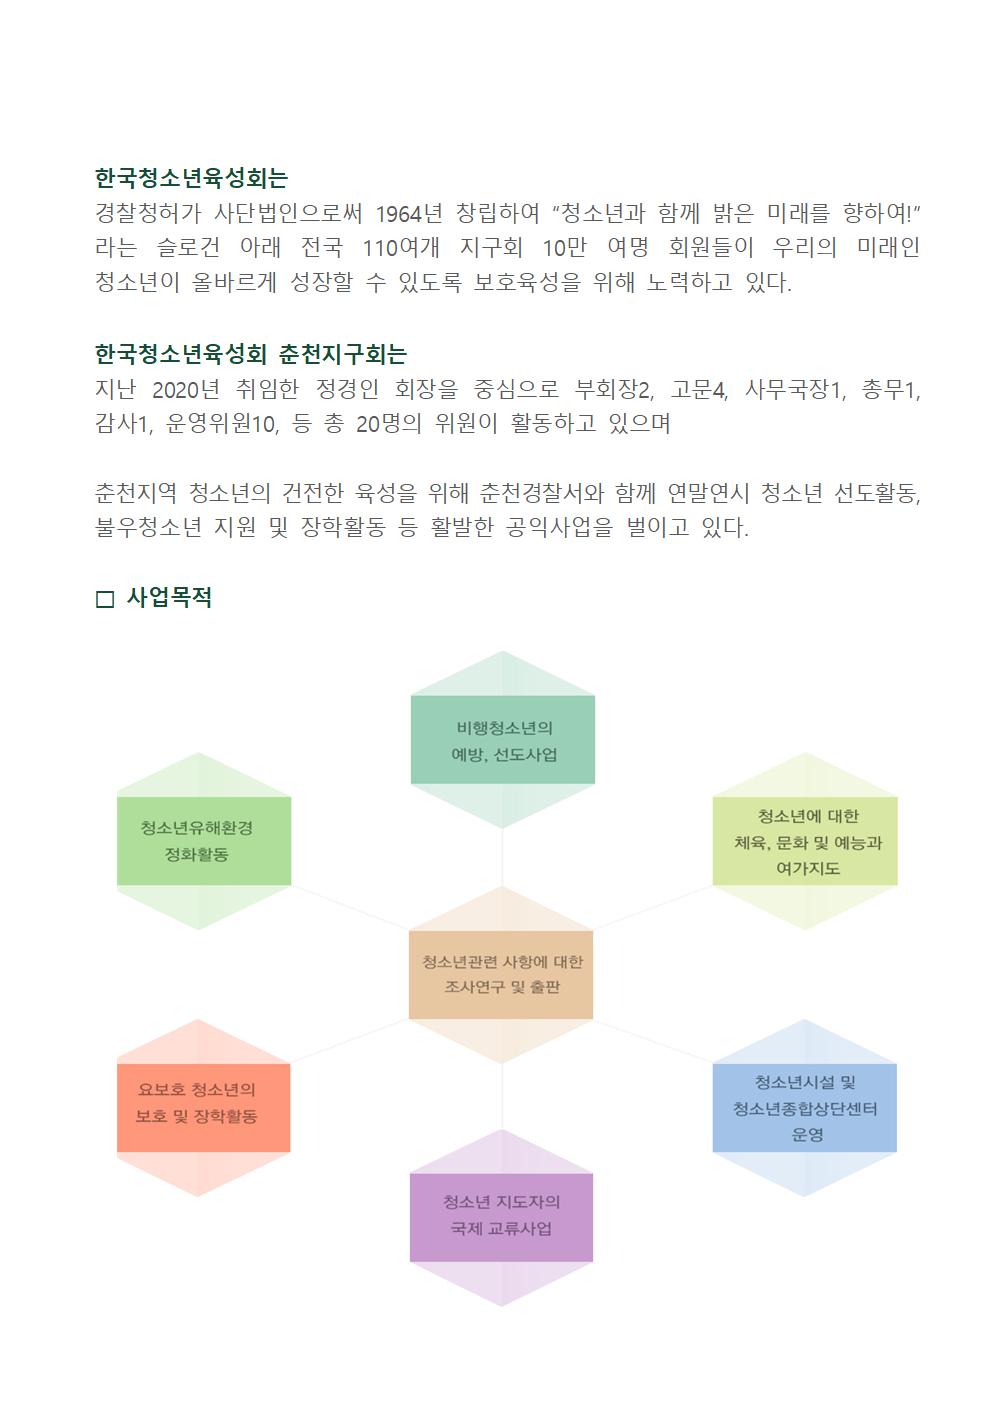 한국청소년육성회 소개-210526 육성회 홈피자료001